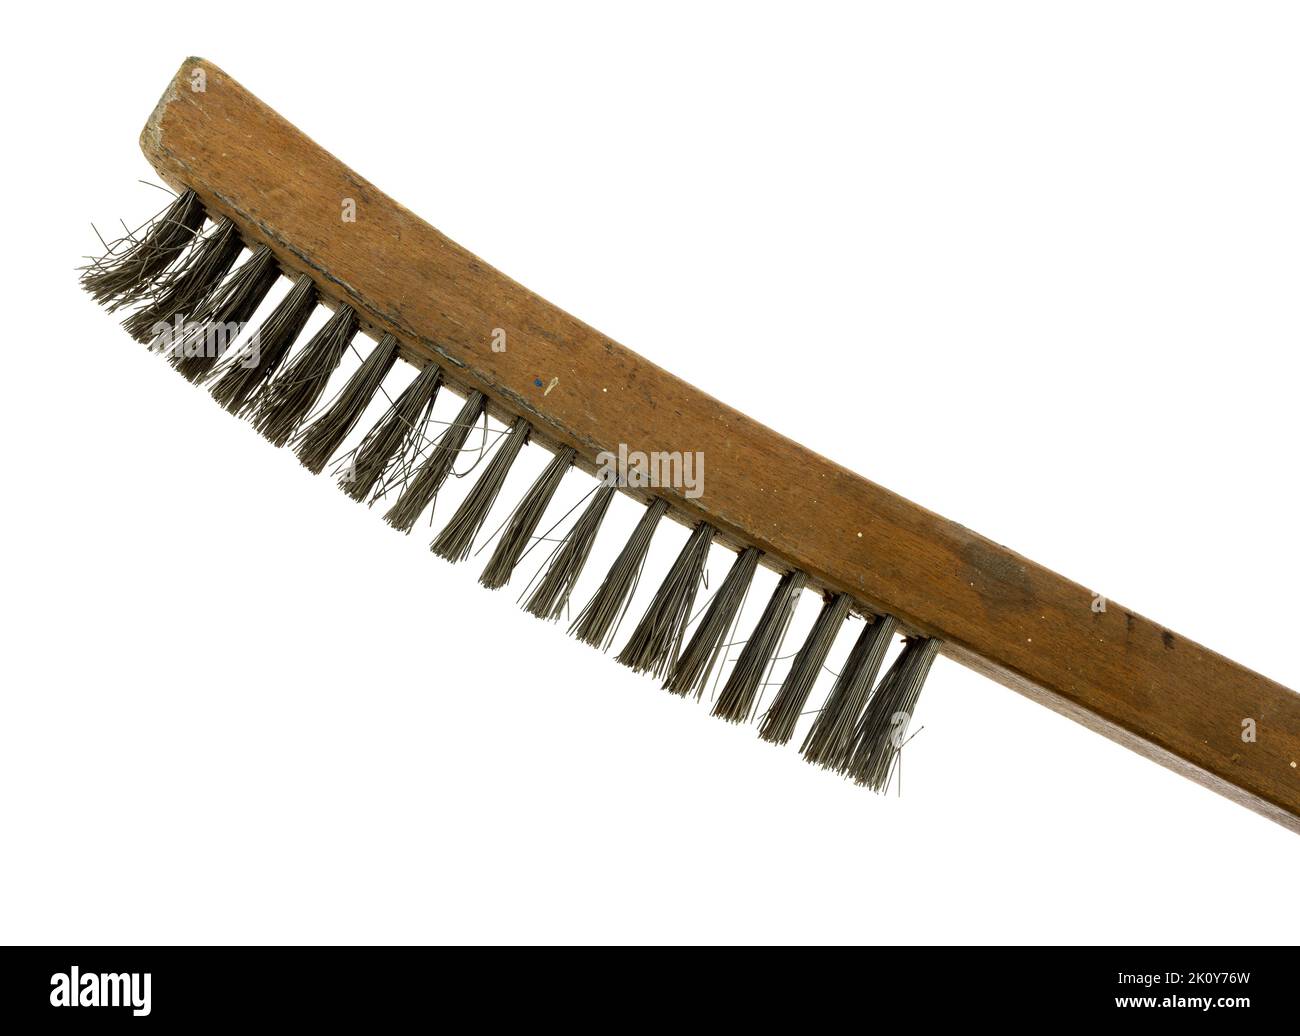 Vecchia spazzola metallica per manico in legno con fili piegati e manico macchiato su sfondo bianco. Foto Stock